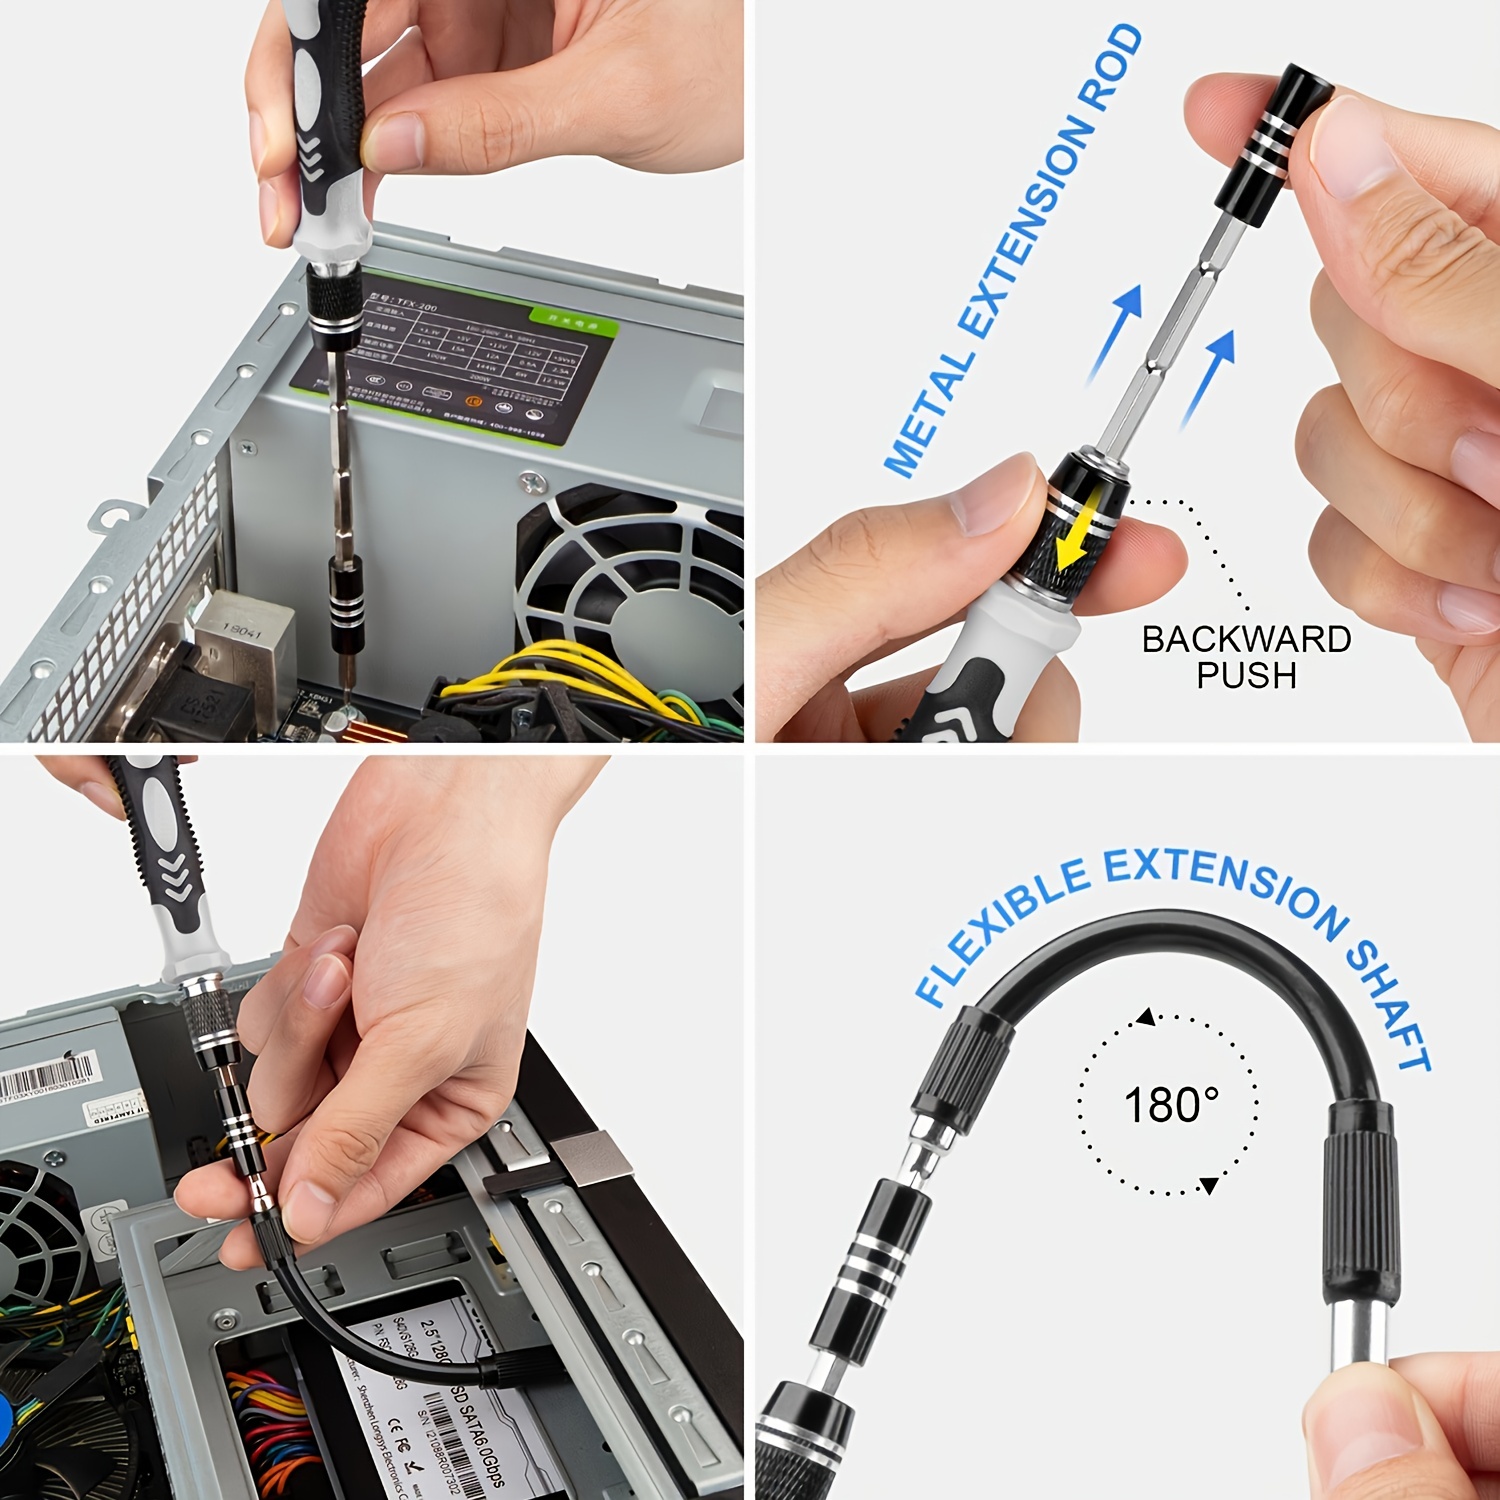 Kit D'outils De Réparation De Nettoyage Pour PS4/PS5 Jeu De - Temu